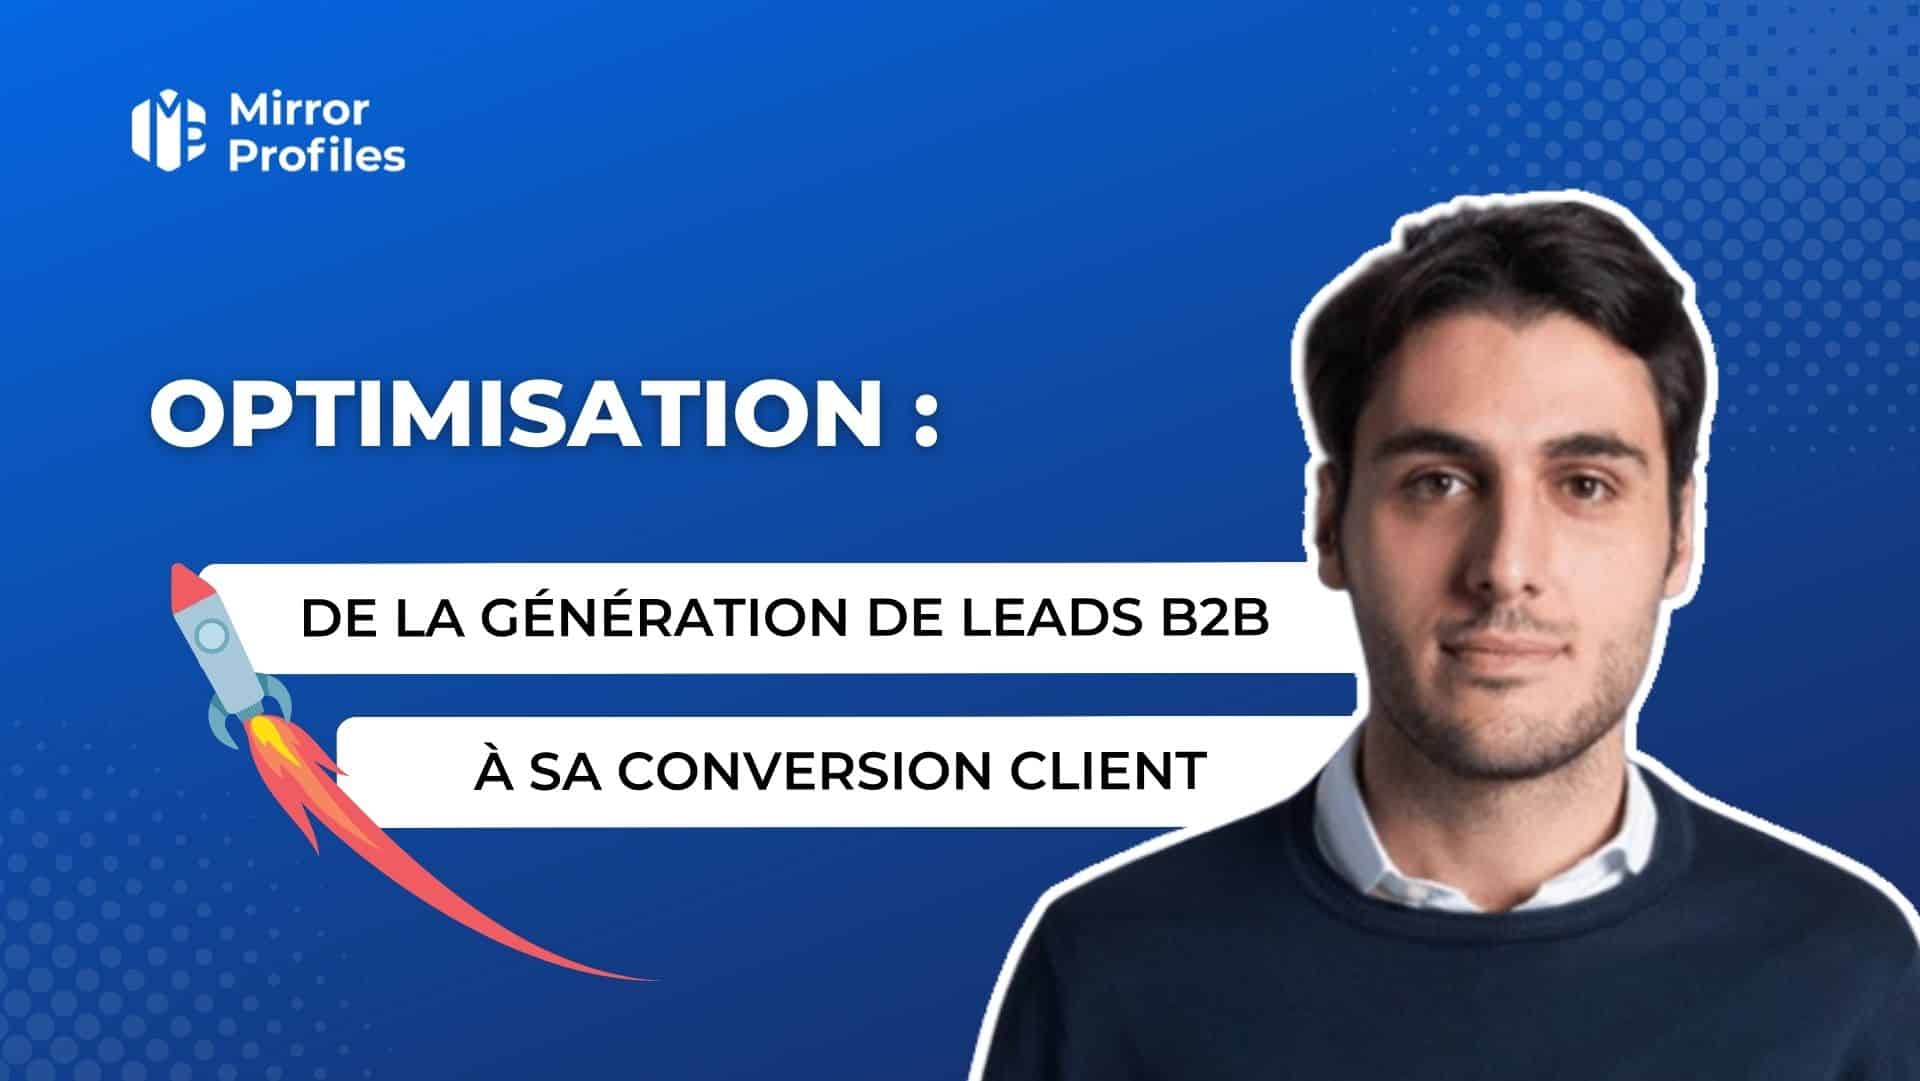 De la génération de leads B2B à sa conversion en client, comment l'optimiser ?